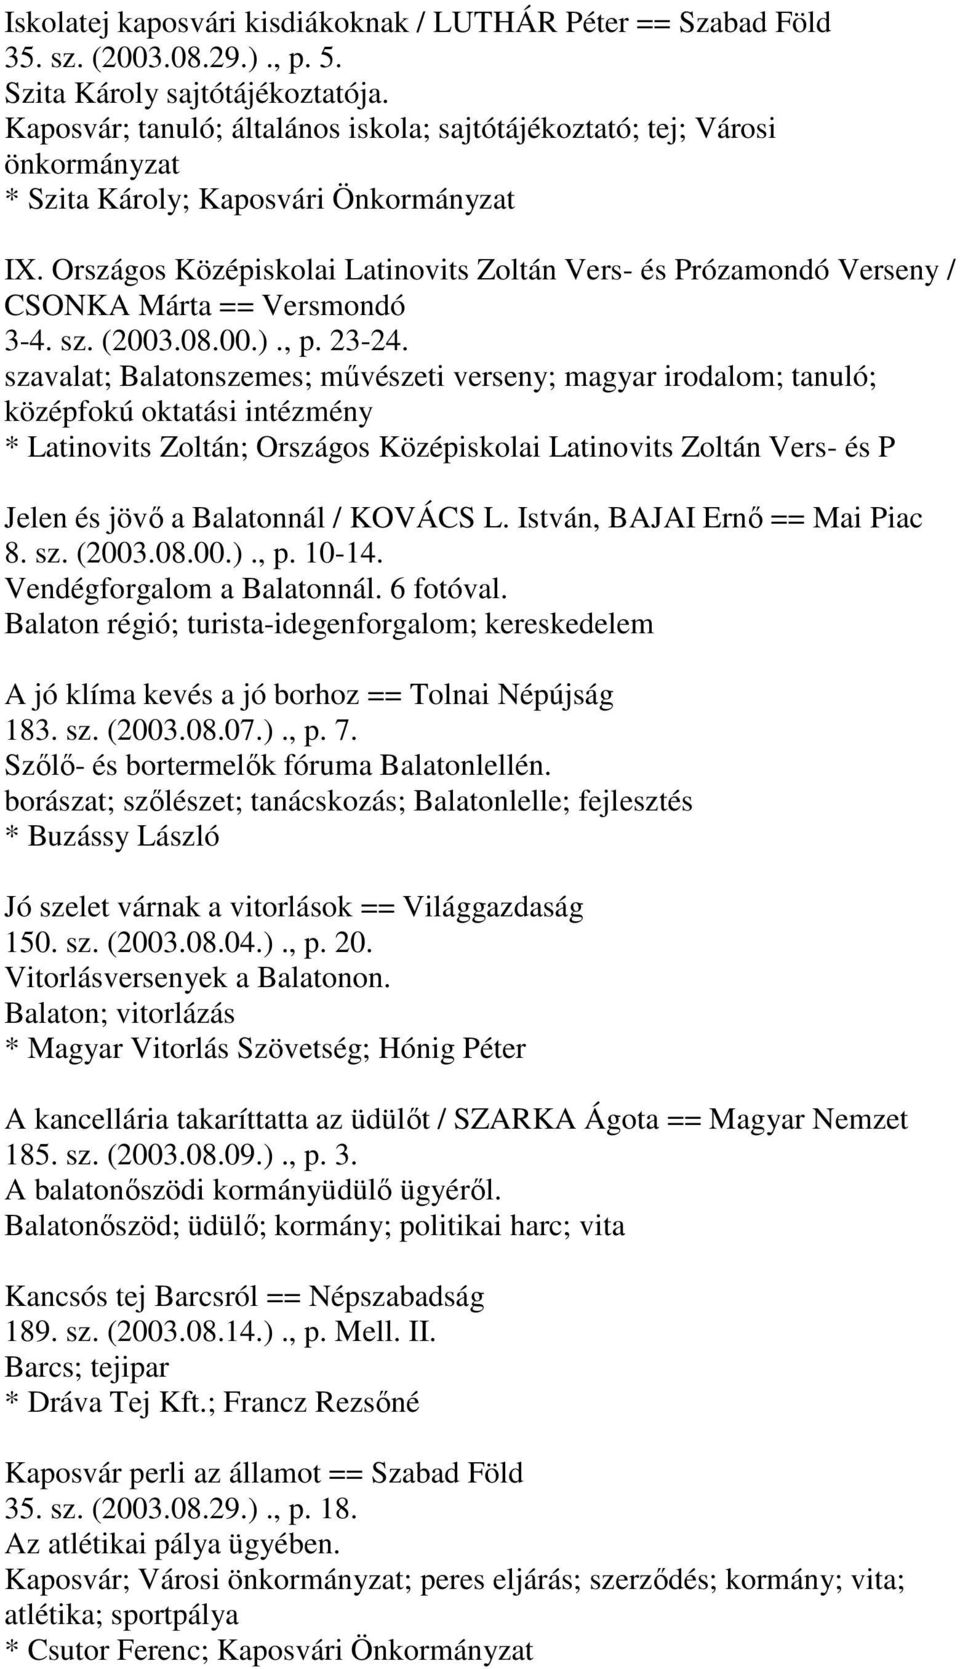 Országos Középiskolai Latinovits Zoltán Vers- és Prózamondó Verseny / CSONKA Márta == Versmondó 3-4. sz. (2003.08.00.)., p. 23-24.